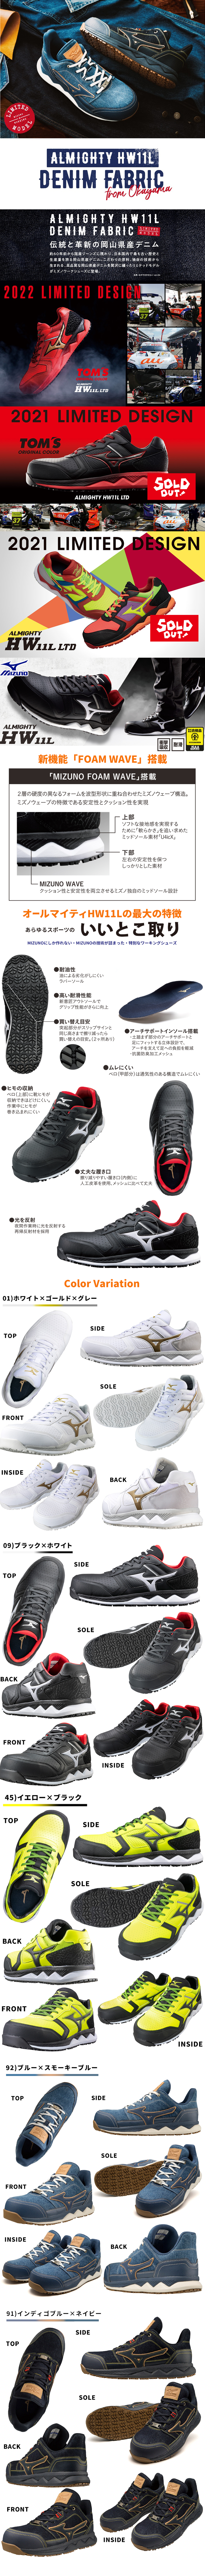 【限定カラー】新商品 MIZUNO ミズノ 安全靴 作業靴 メンズ 新品